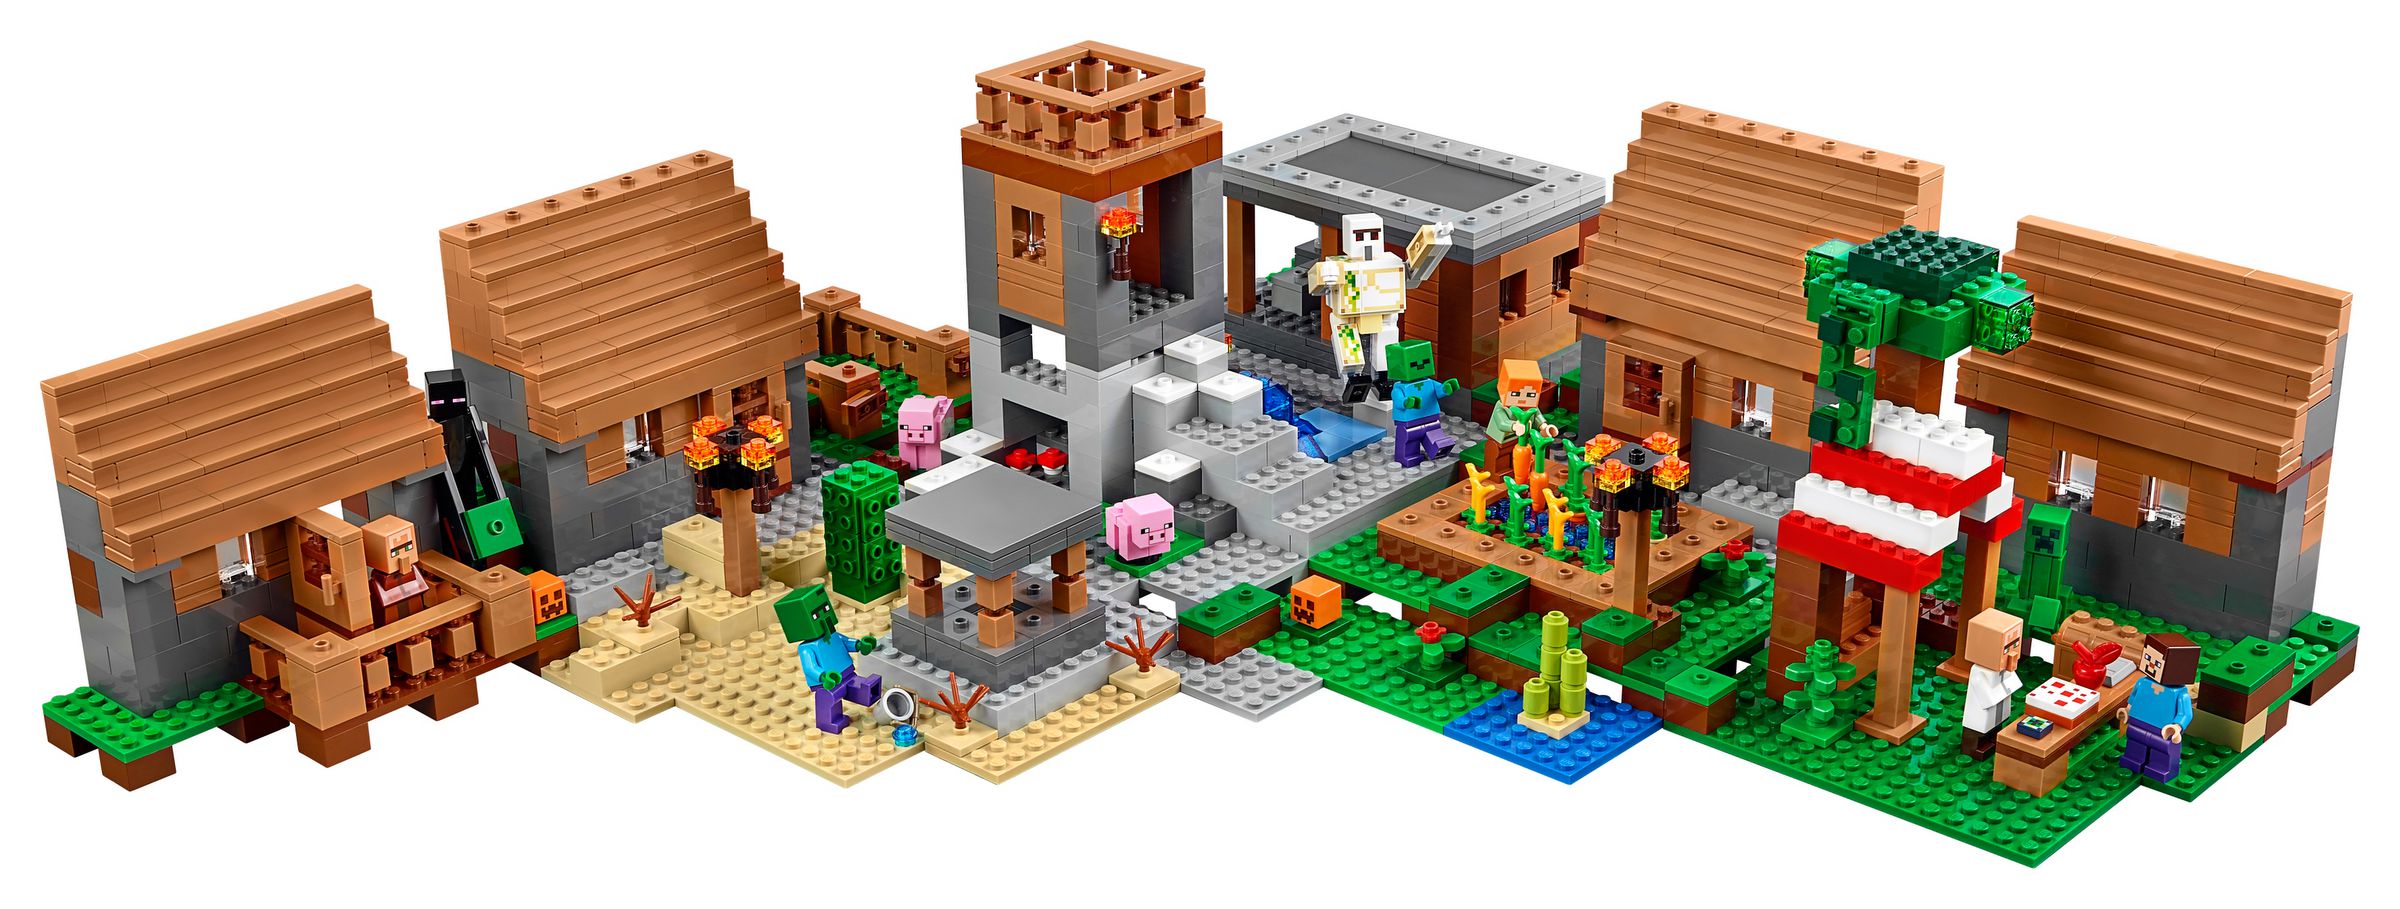 LEGO Minecraft 21128 Das Dorf LEGO_21128_alt3.jpg